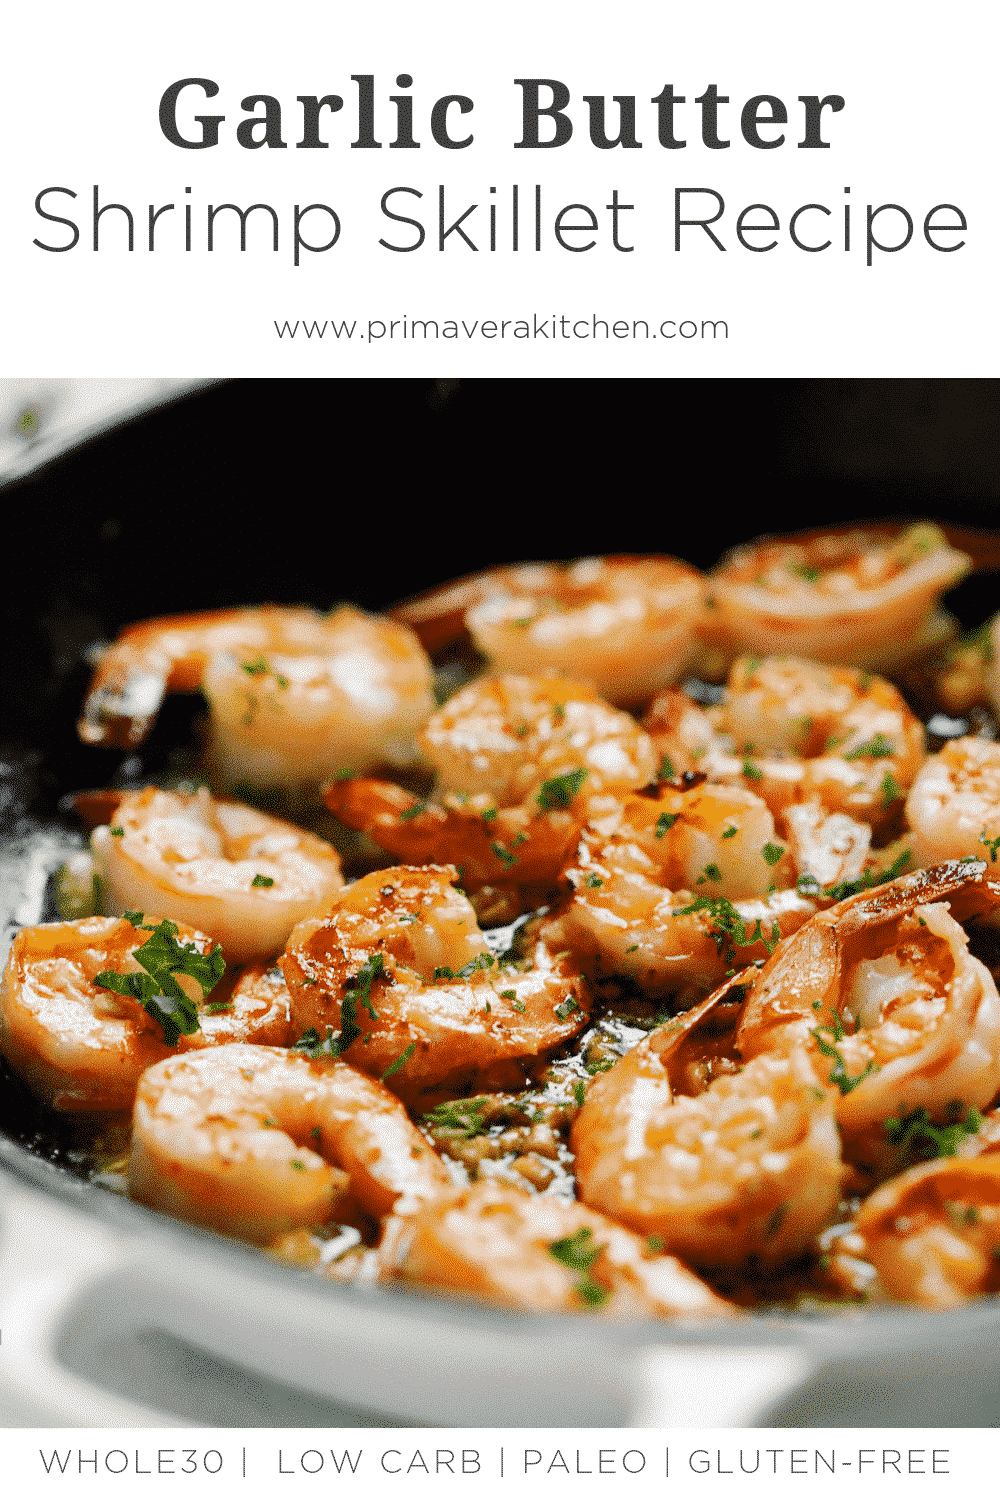 Garlic Butter Shrimp Skillet Recipe